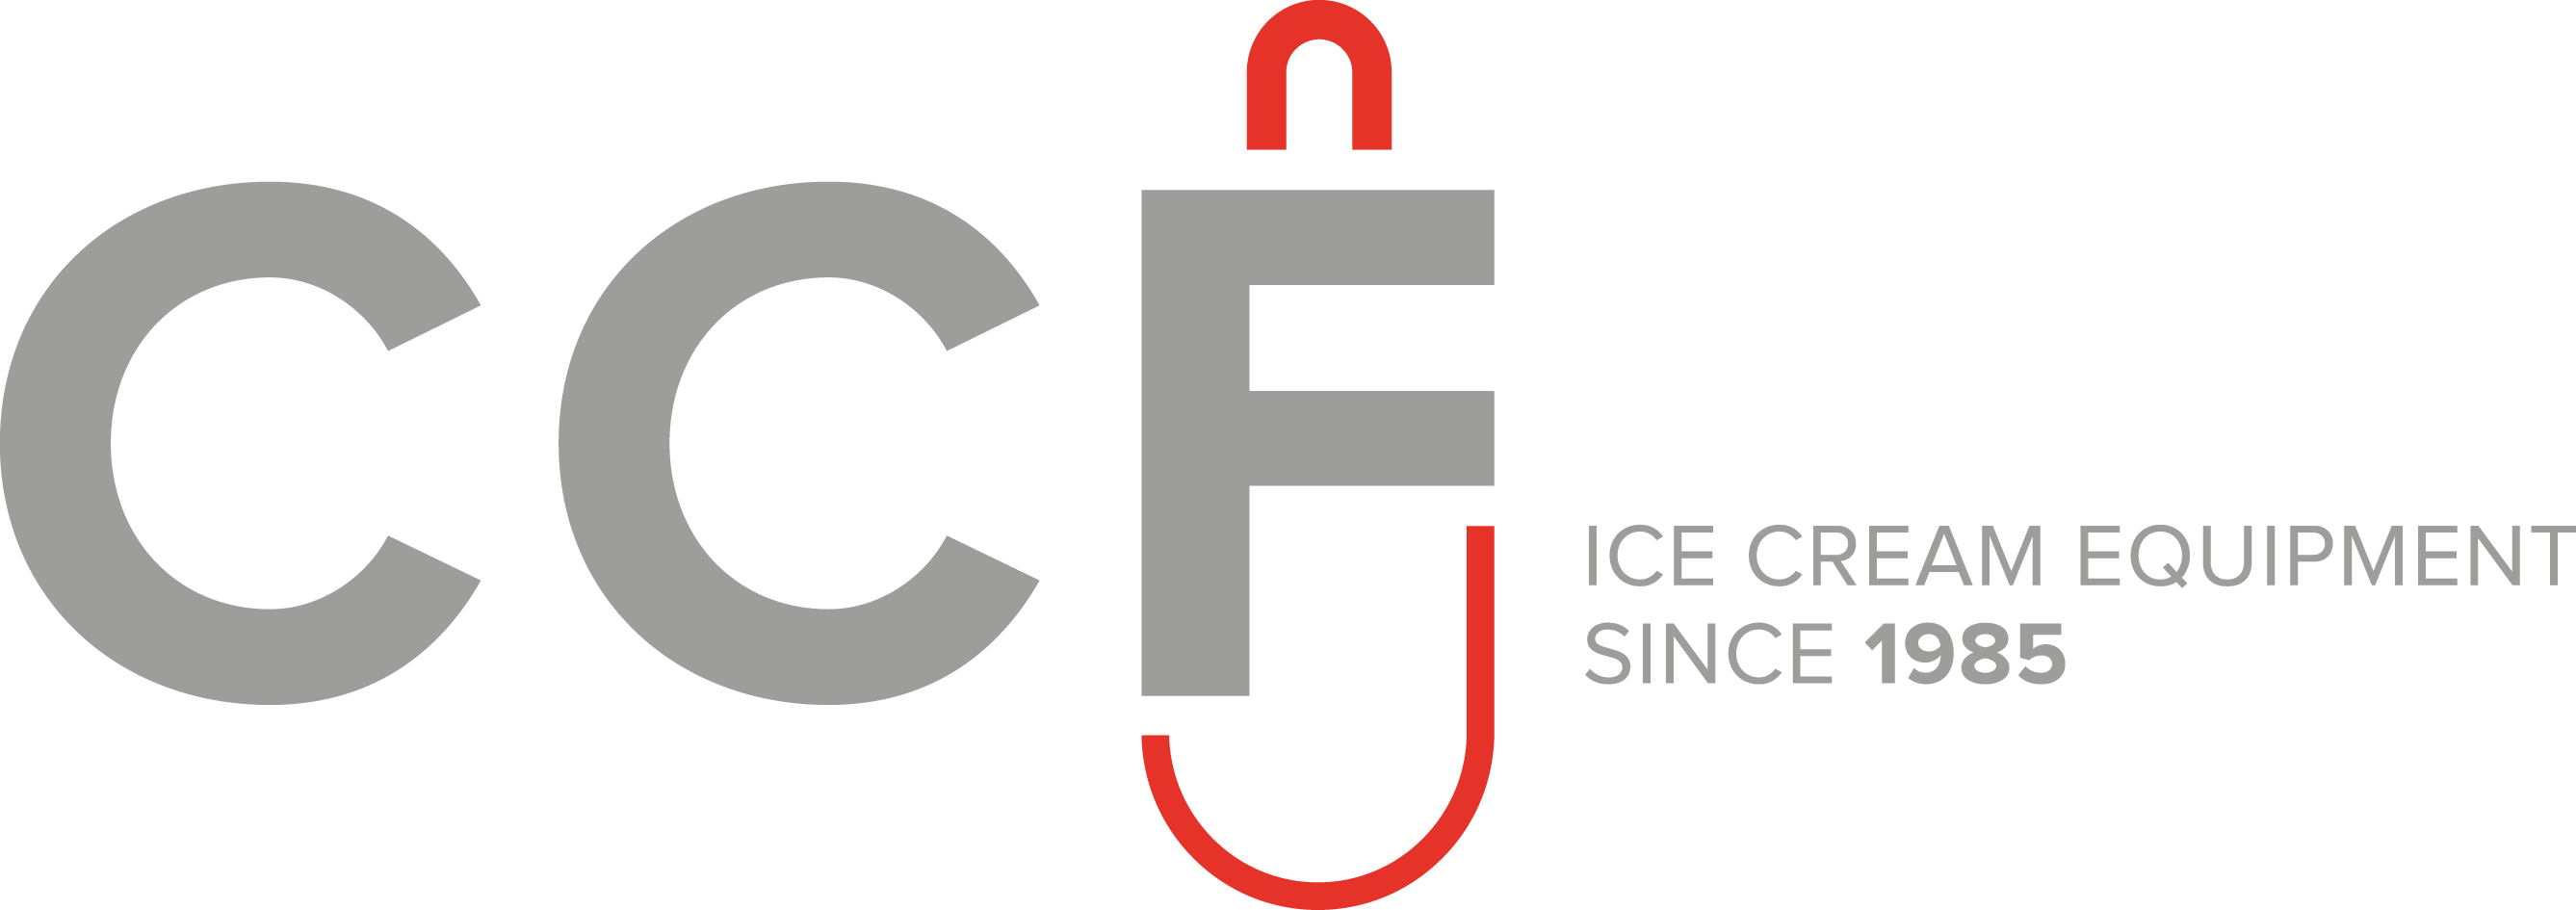 CCF Equipment Srl atterzzature per gelato